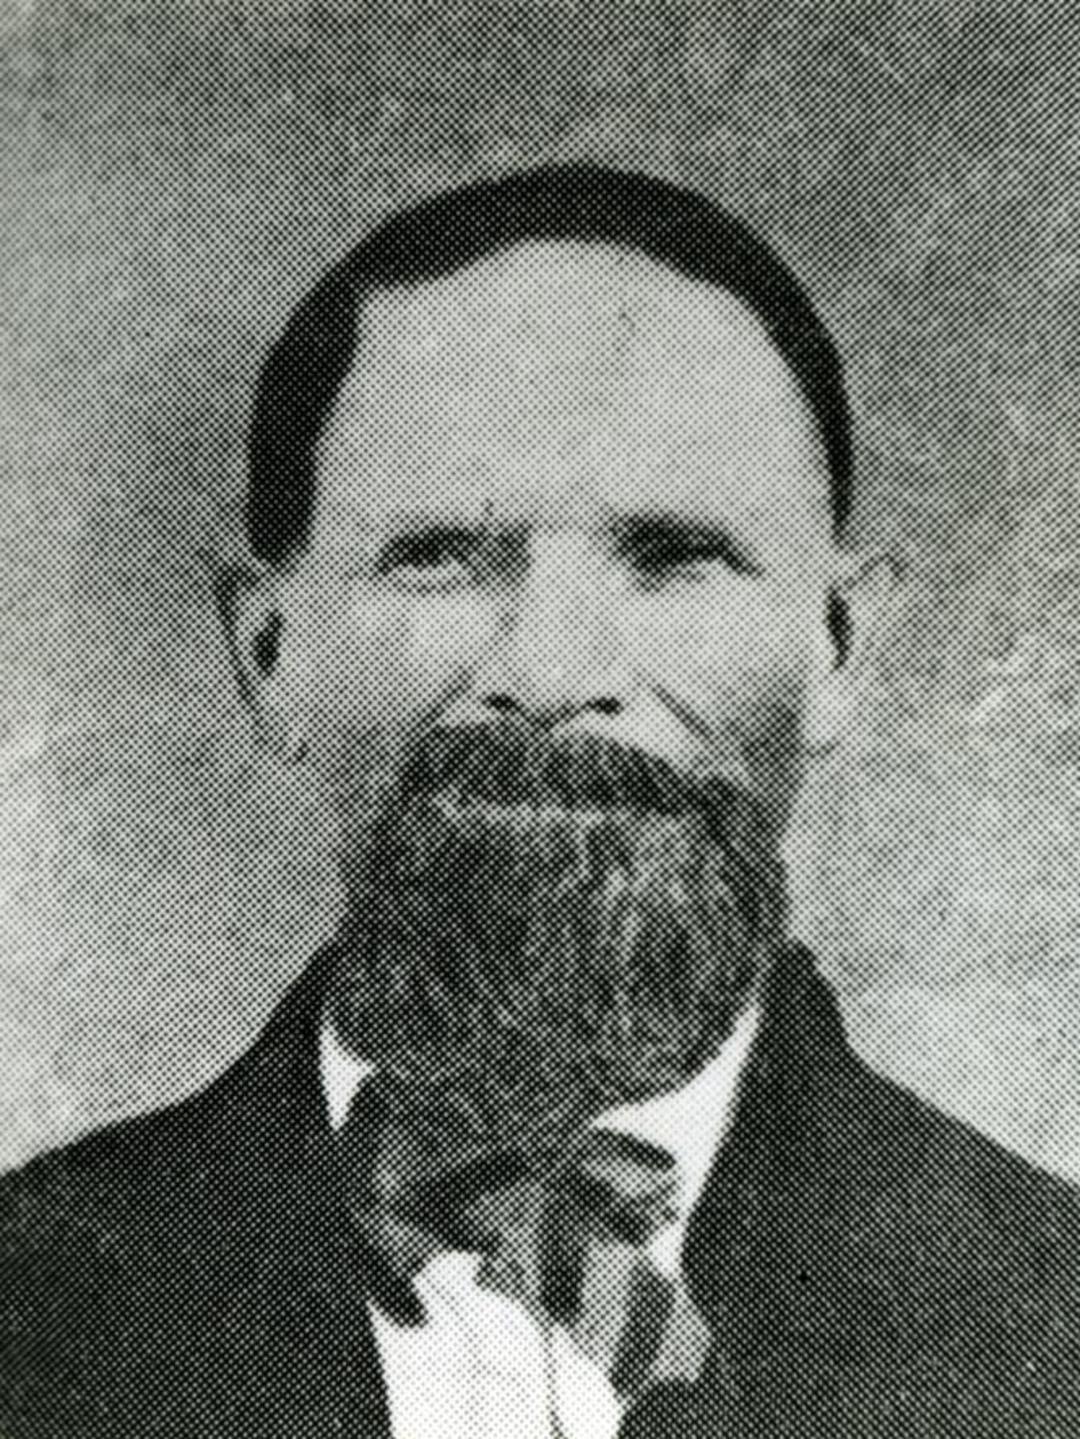 Jacob Farnum Abbott (1808 - 1872) Profile